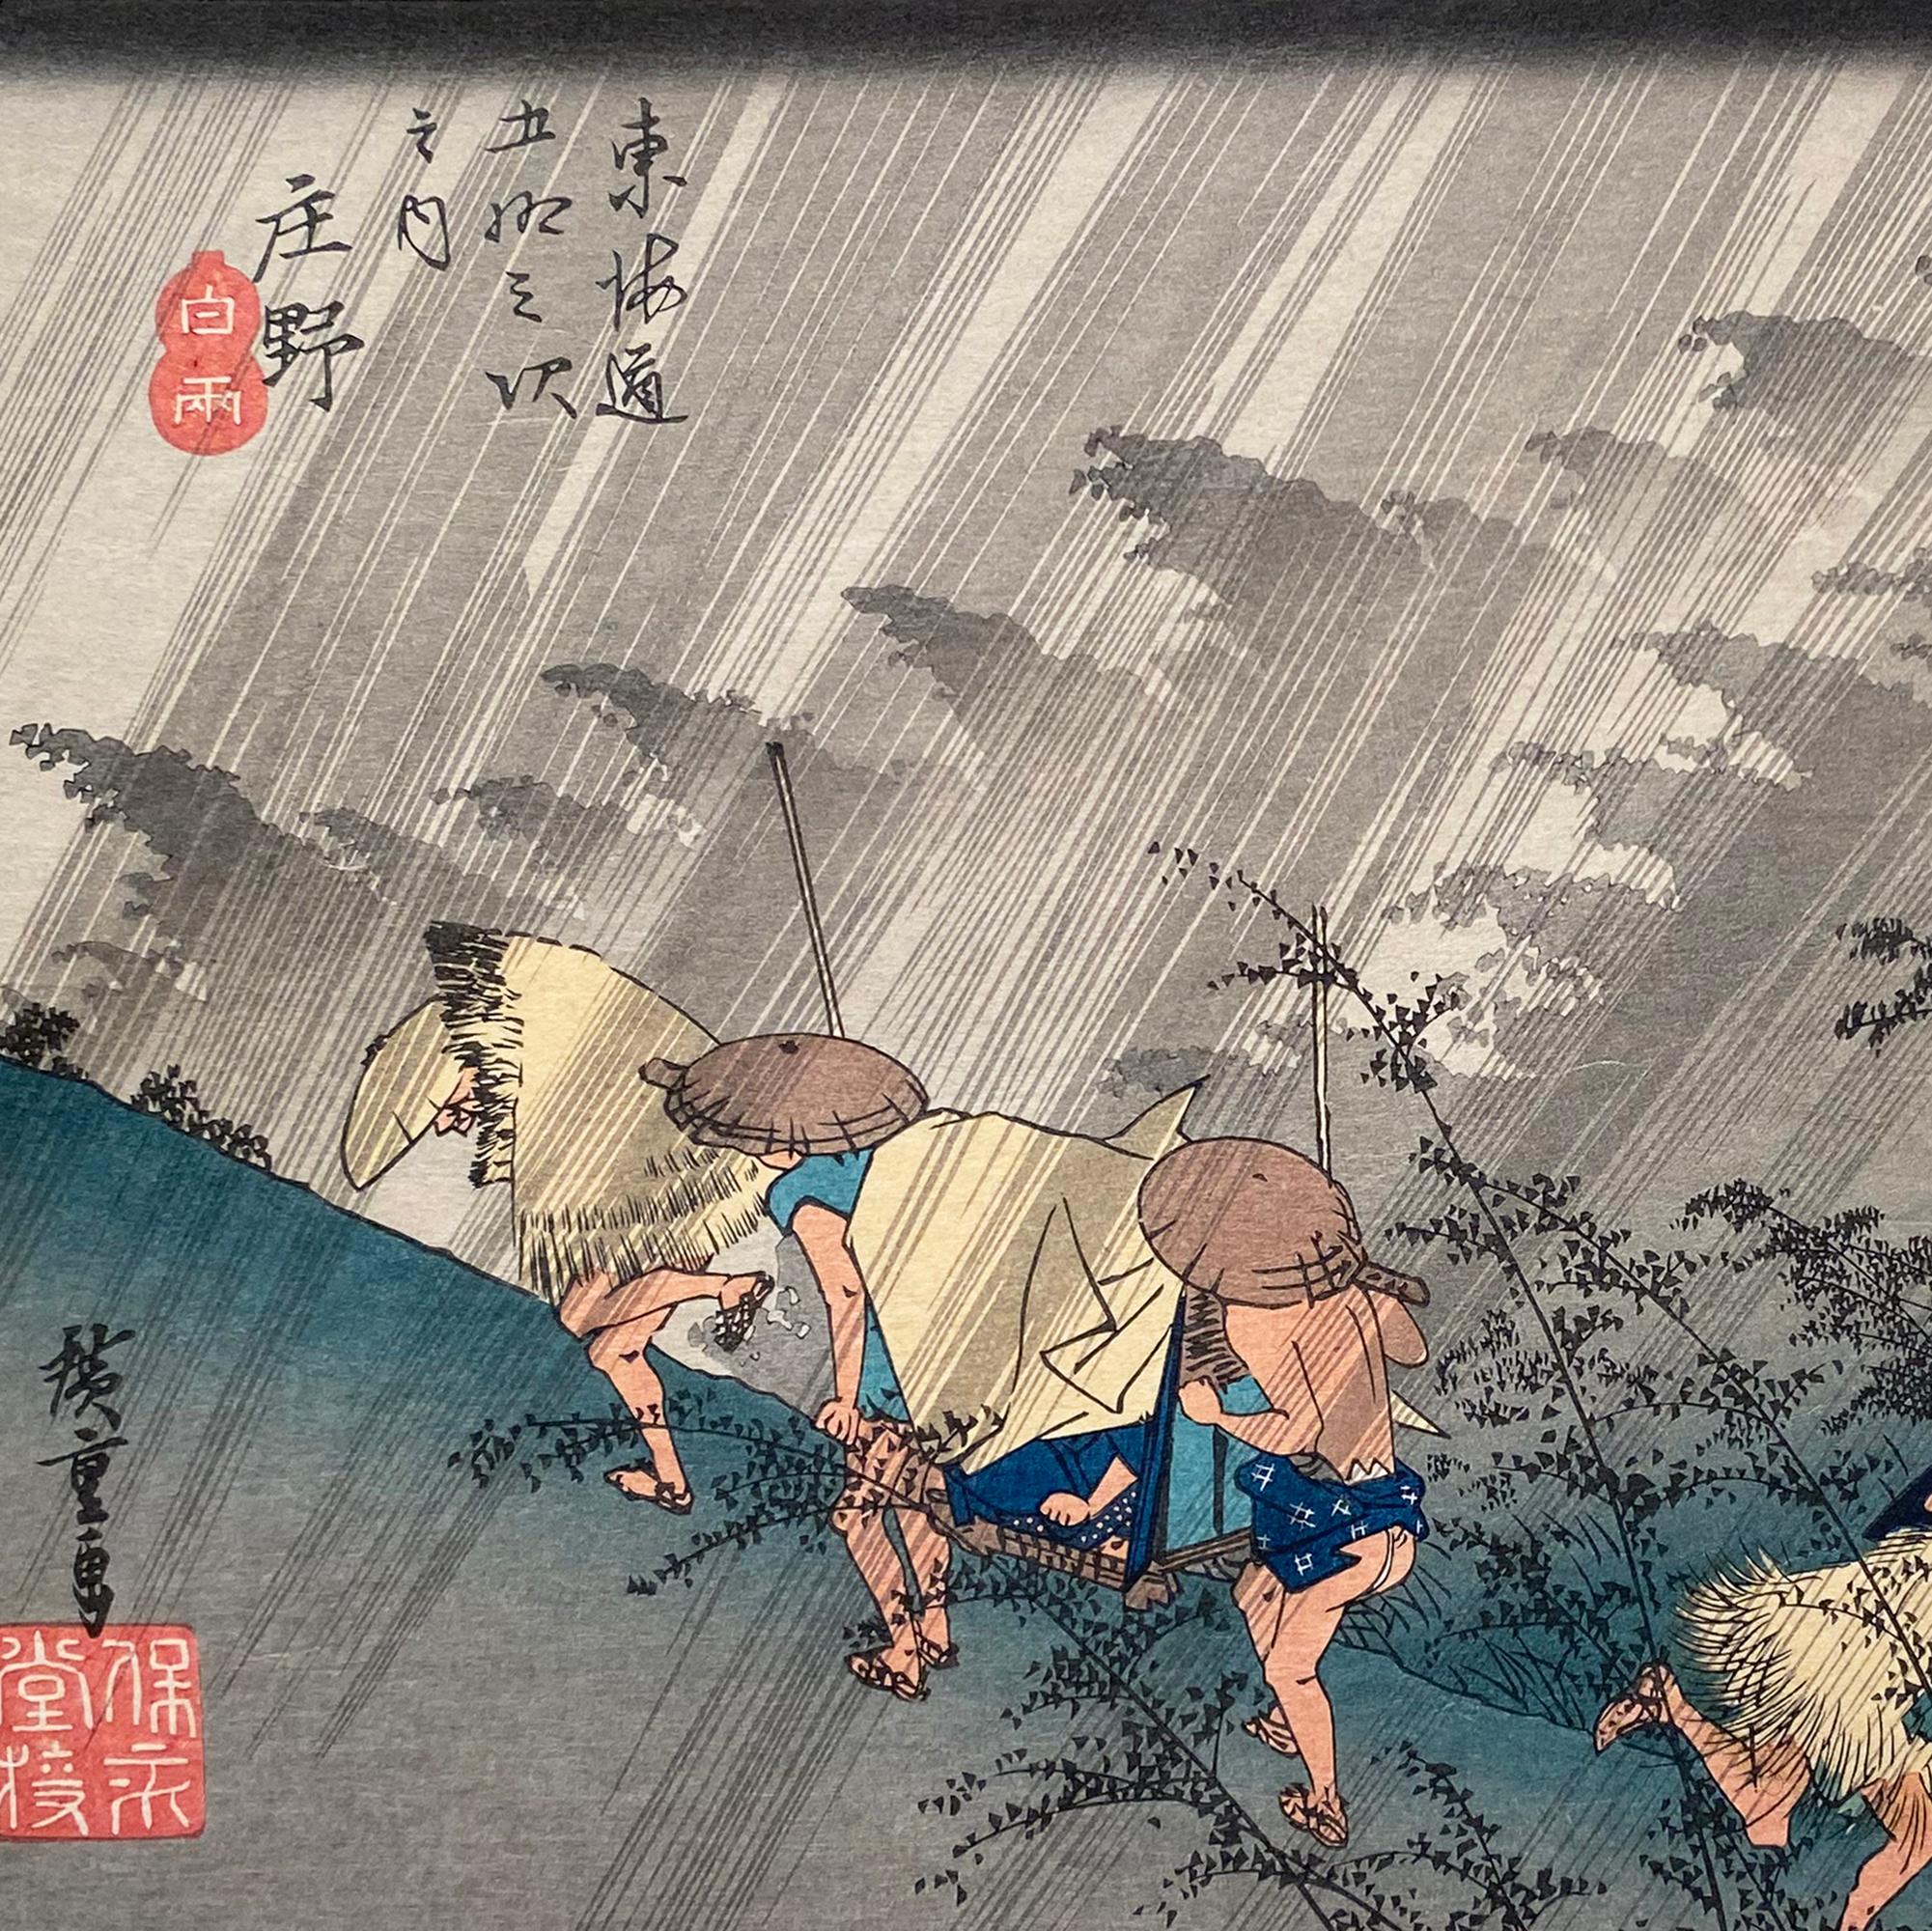 Eine Tusche auf Papier, Nishiki-e- und Yoko-e-Holzschnitt-Landschaft, die eine Ansicht von Reisenden zeigt, die von starkem Regen überrascht werden. Signiert in Kanji unten links, 